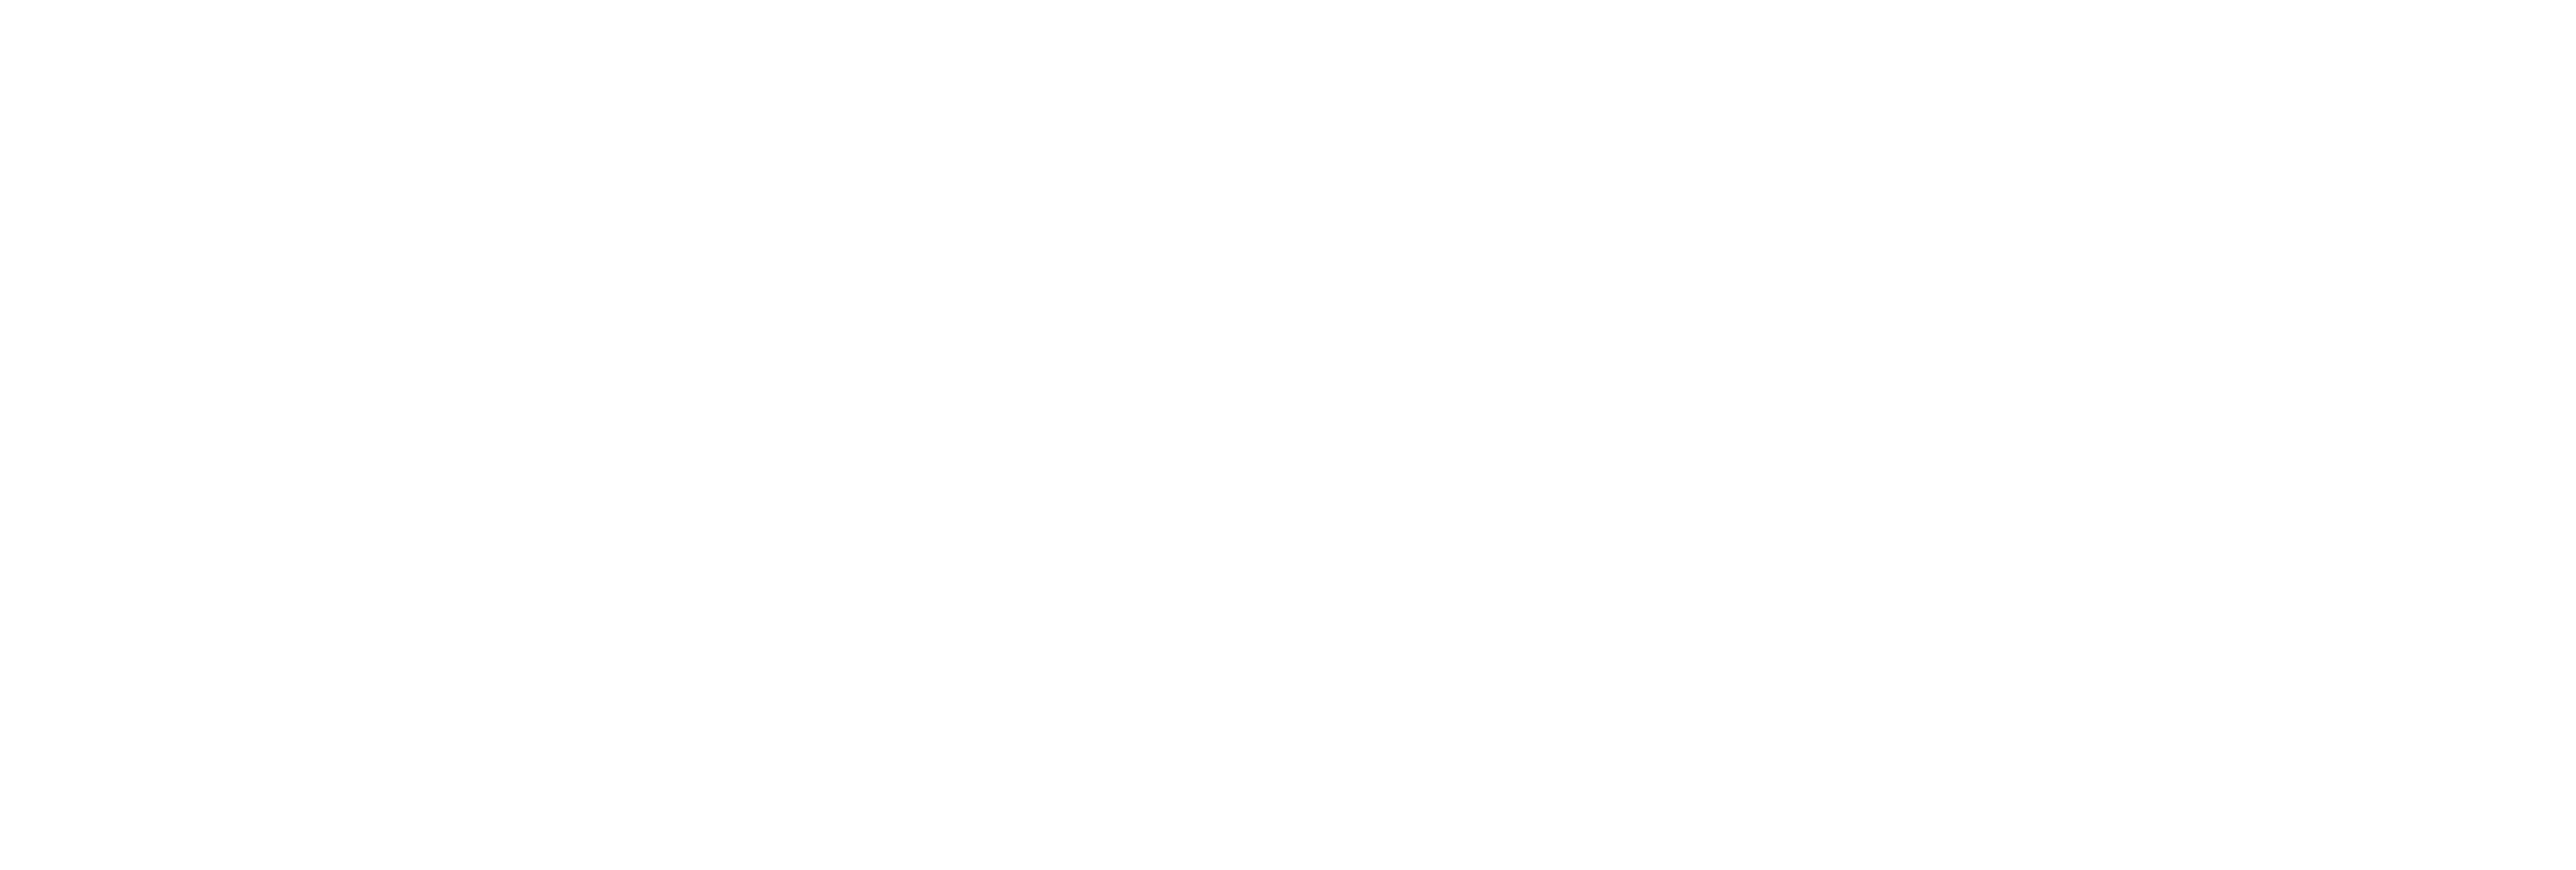 AniCura Món Veterinari Hospital Veterinari logo